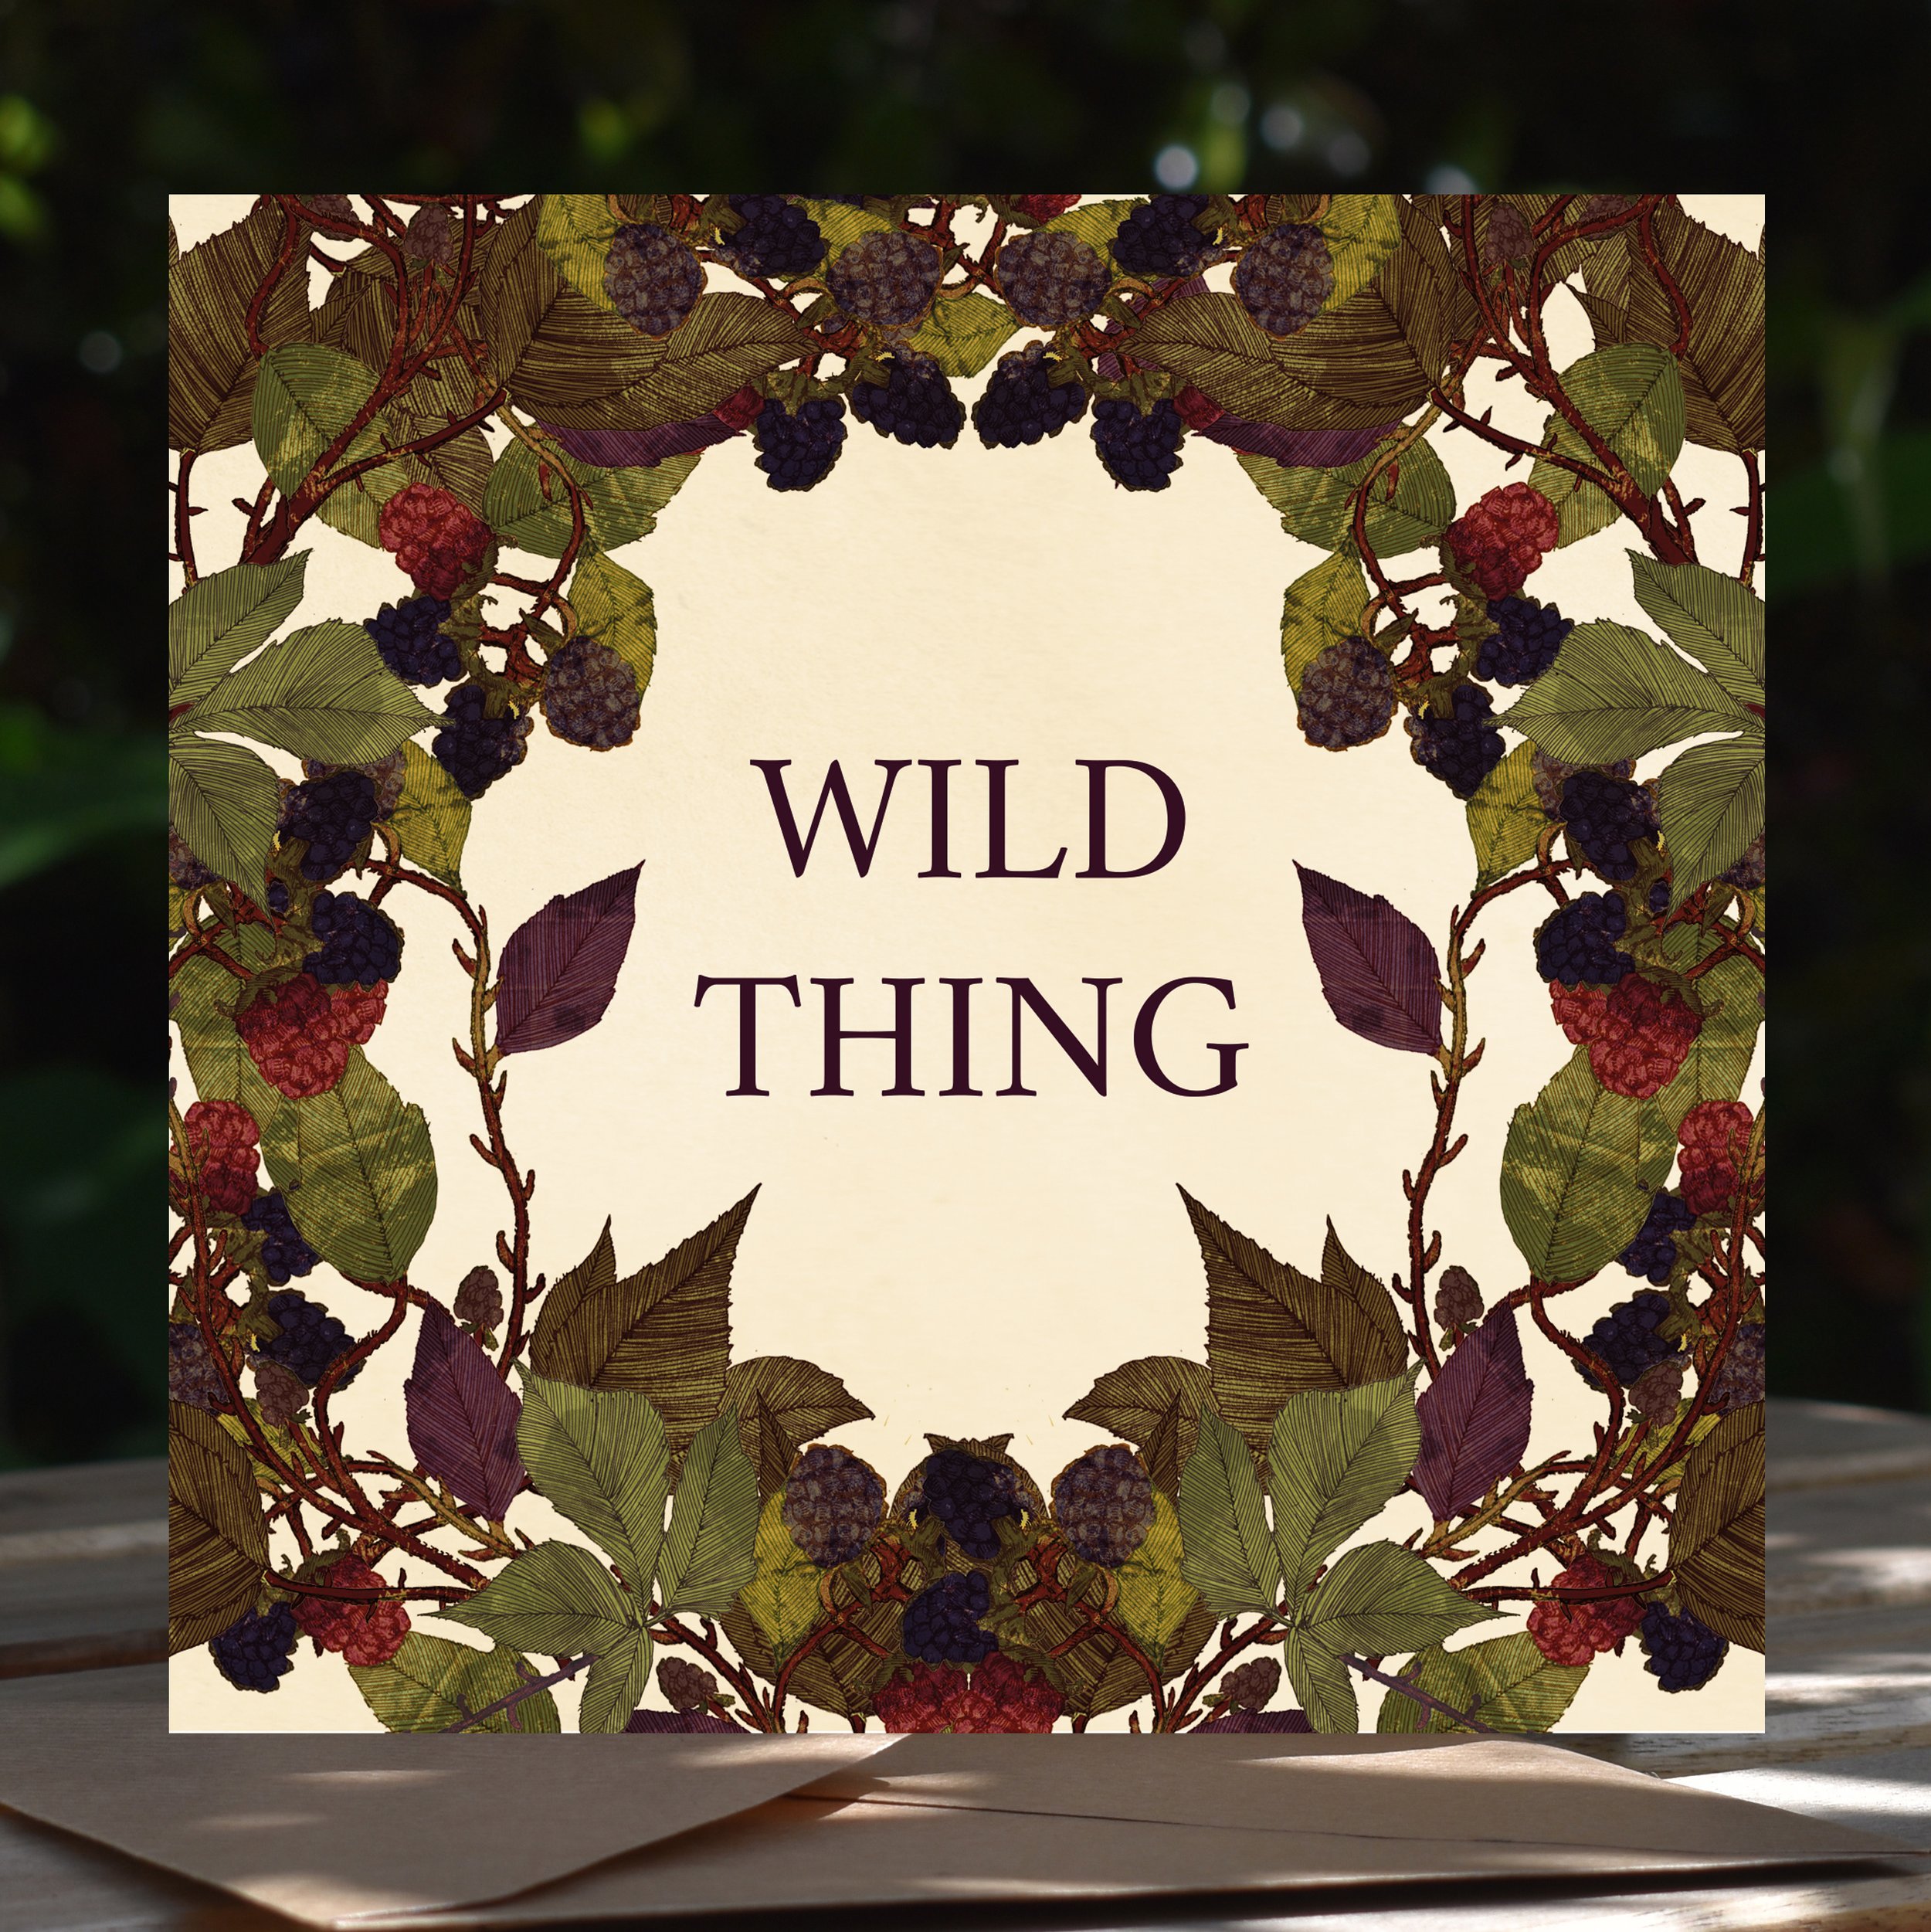 wild thing greeting card .jpg